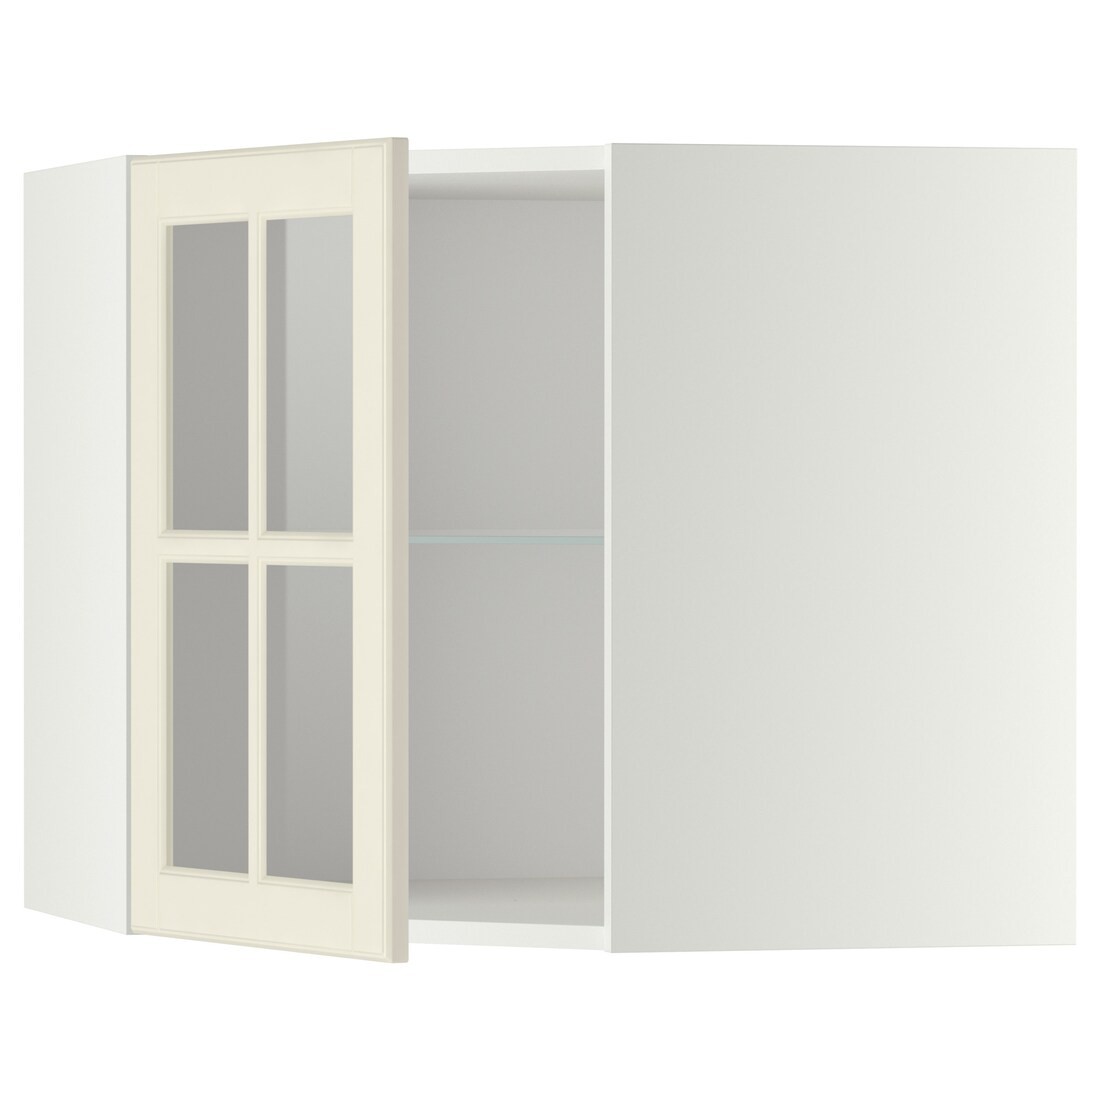 METOD МЕТОД Угловой настенный шкаф с полками / стеклянная дверь, белый / Bodbyn кремовый, 68x60 см